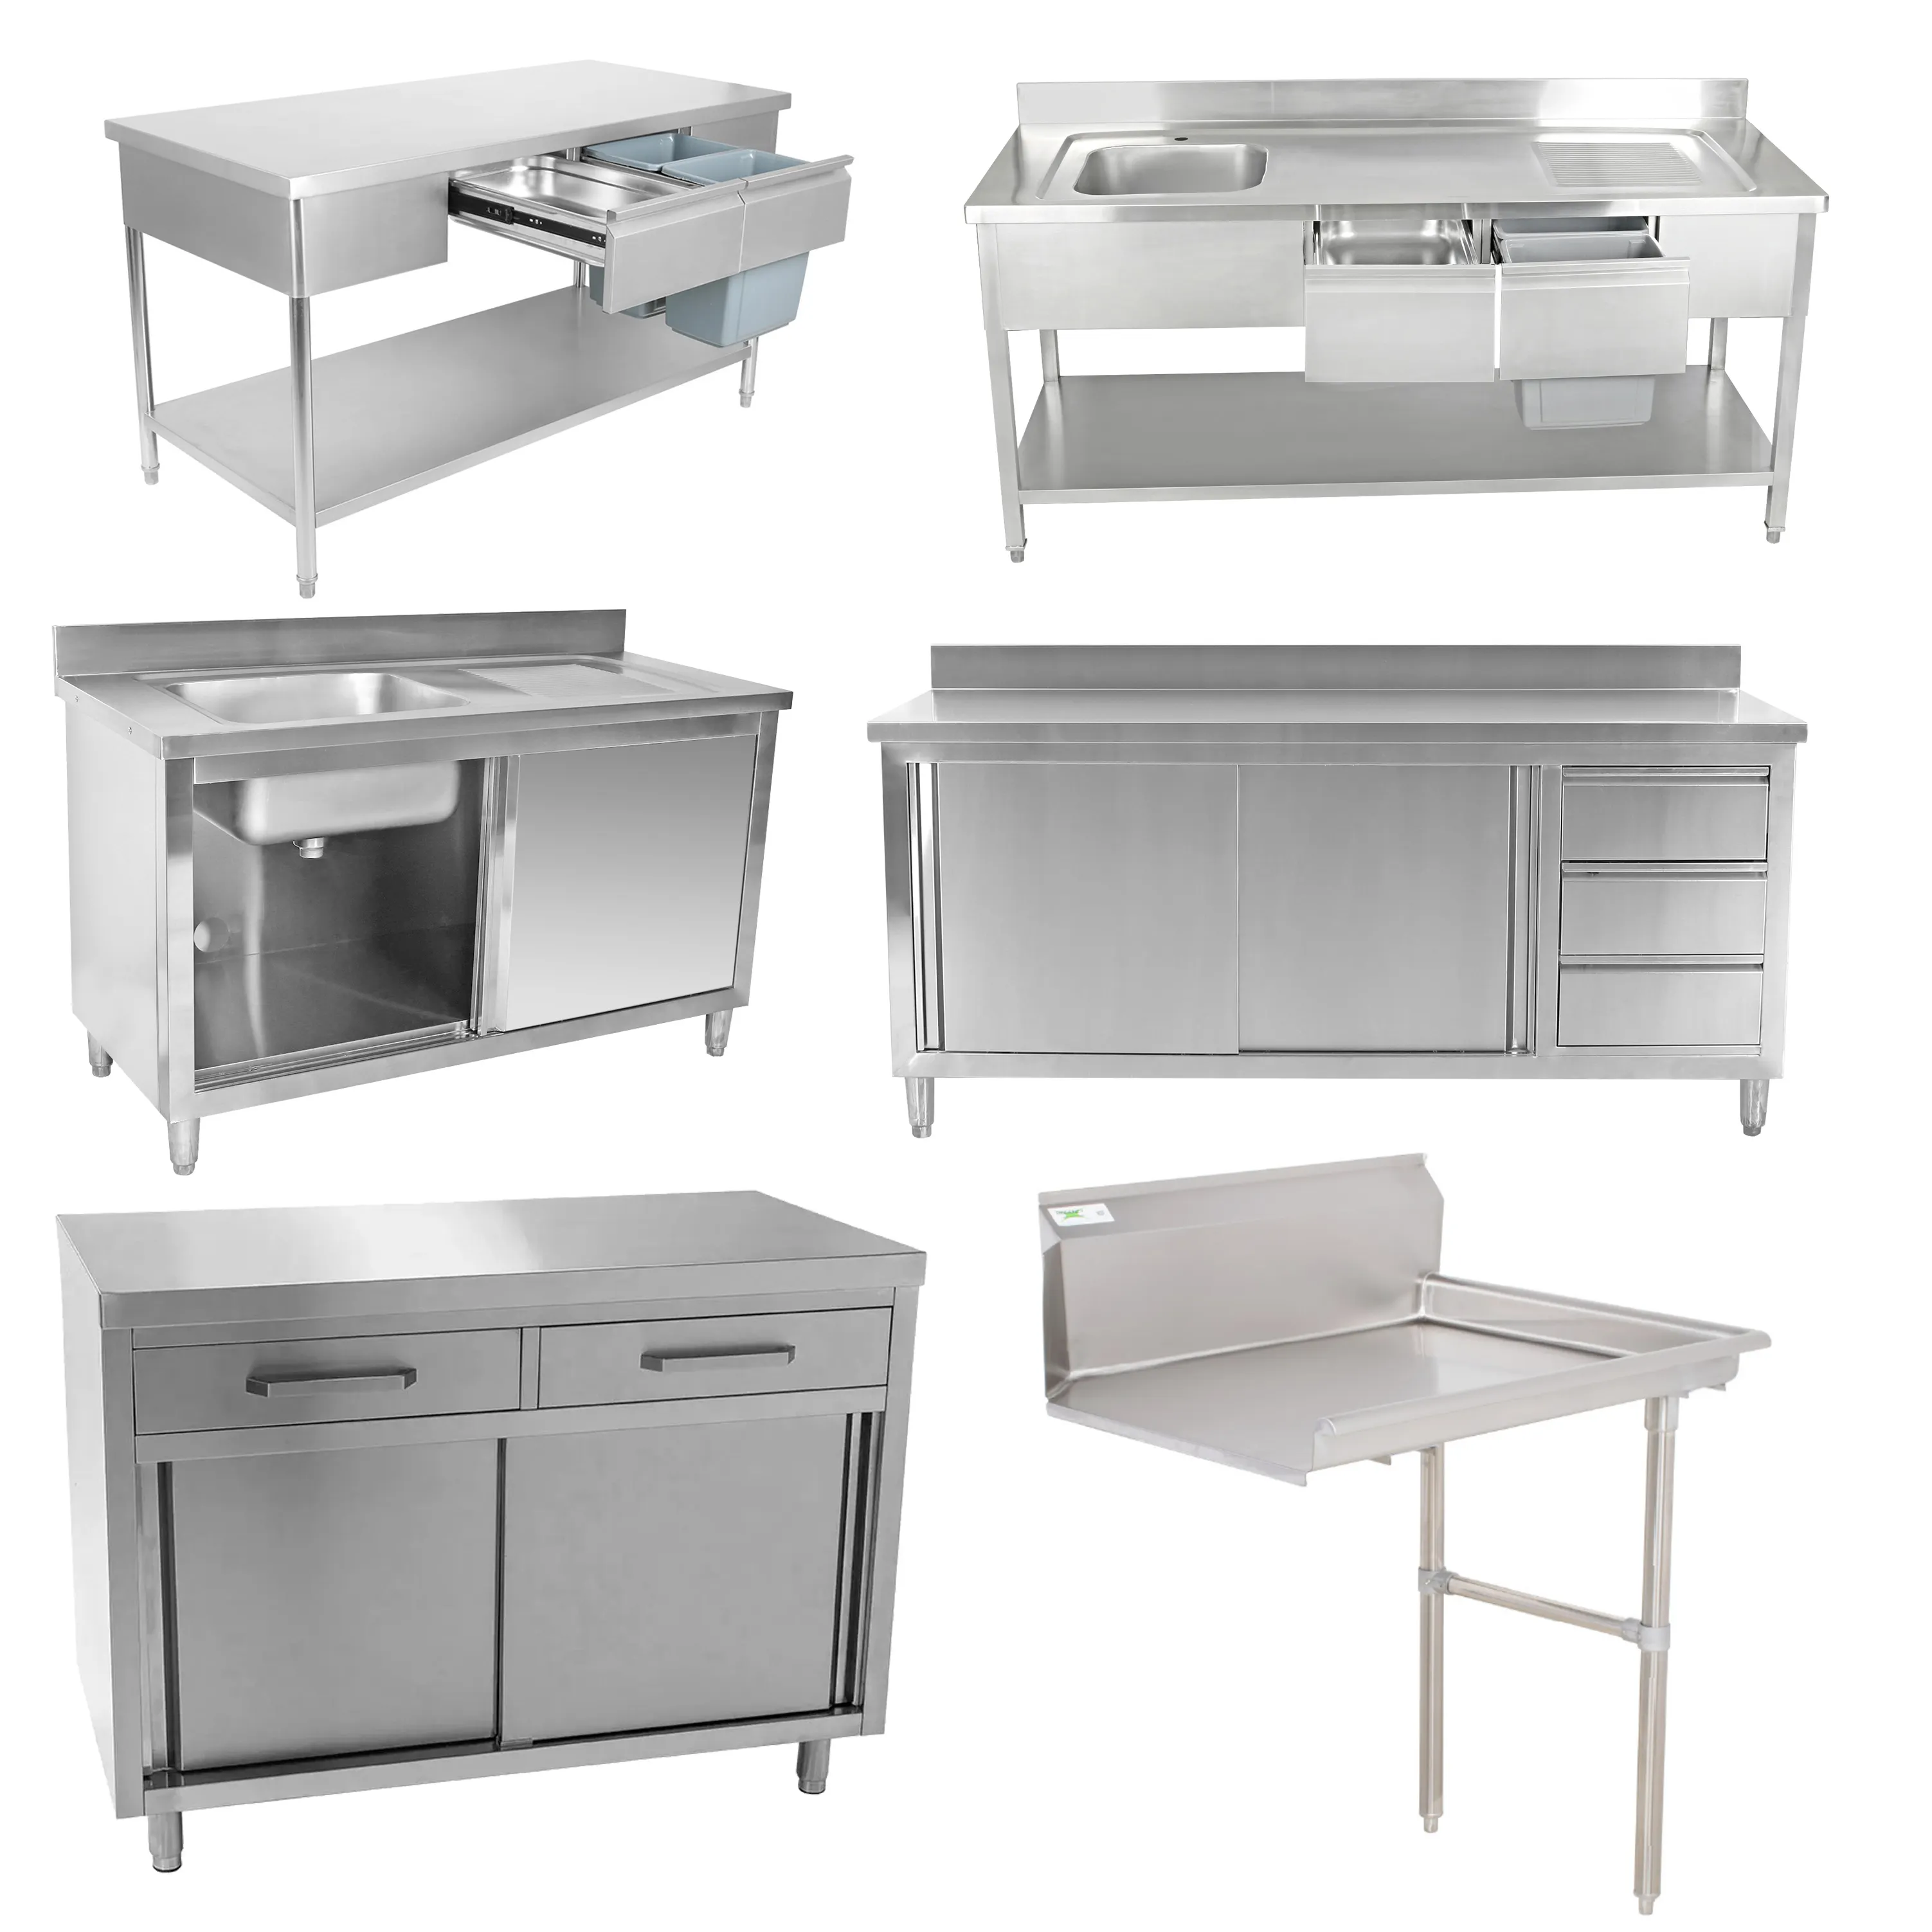 NSF stainless steel work table/stainless steel worktable